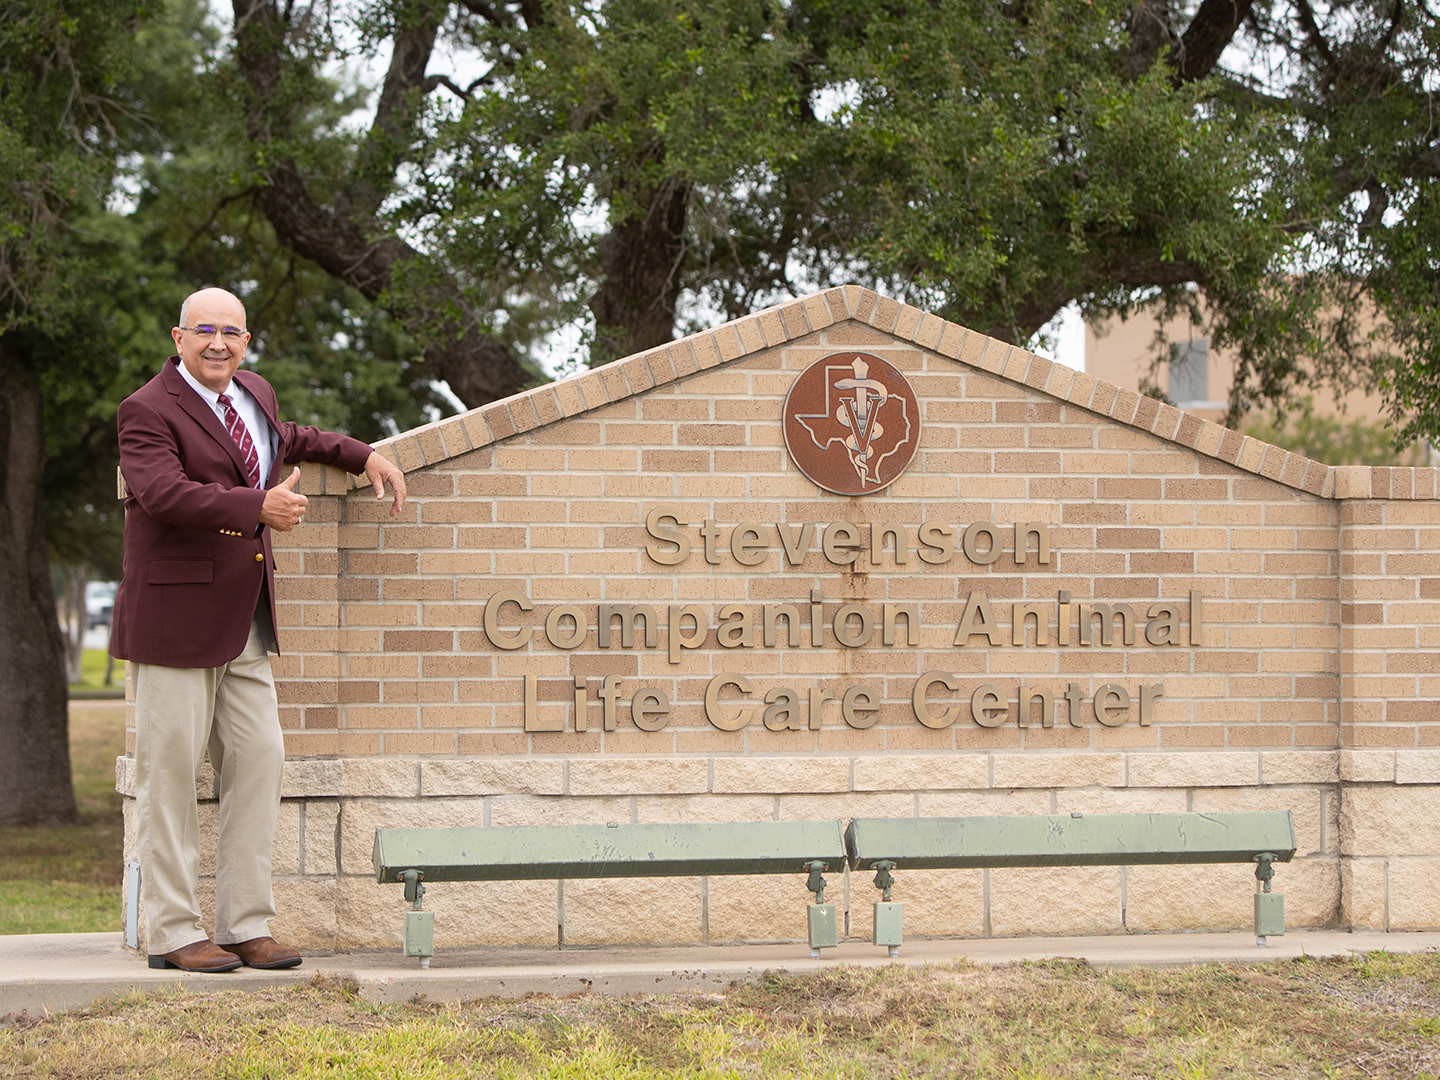 Dr. Sam Miller standing by the Stevenson Center sign